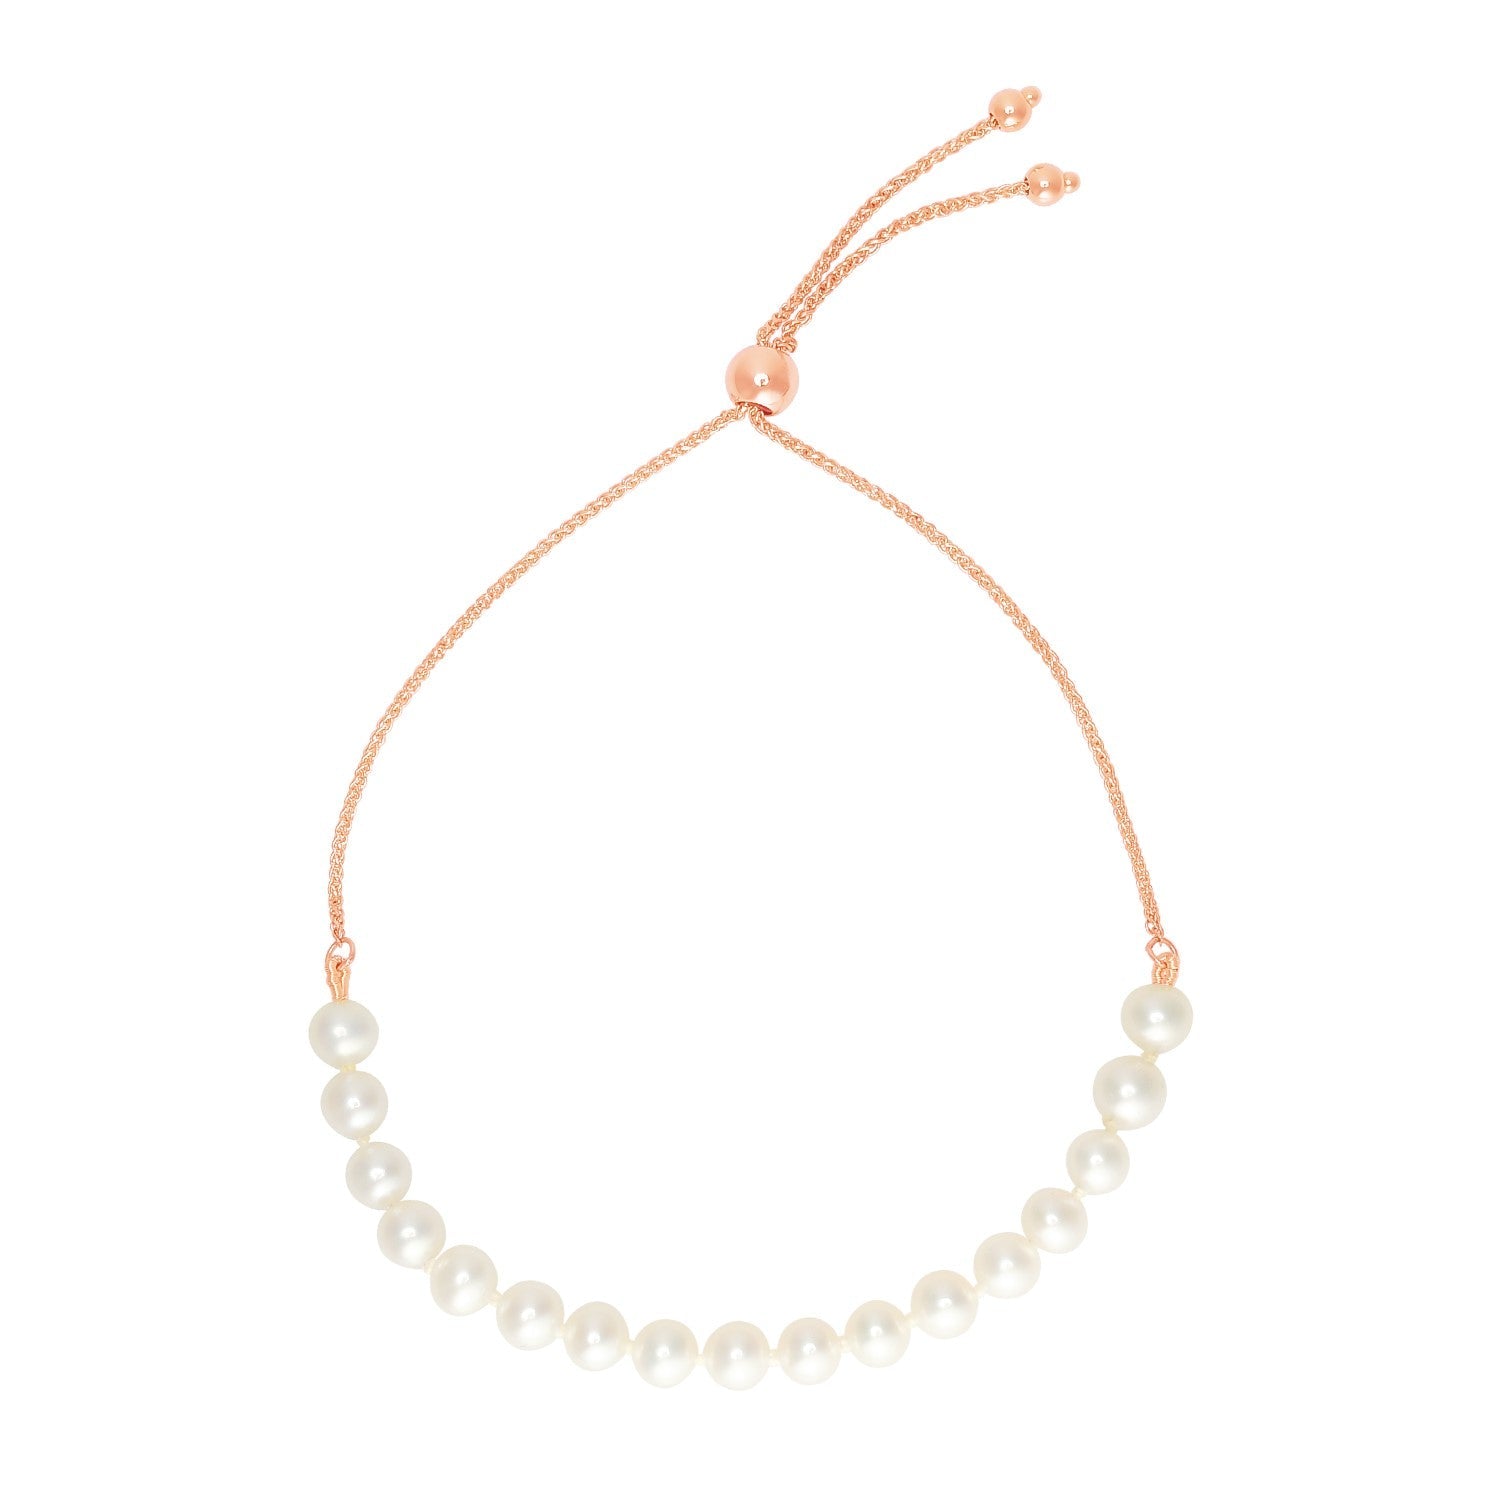 14k Rose Gold Adjustable Friendship Bracelet with Pearls - LinkagejewelrydesignLinkagejewelrydesign